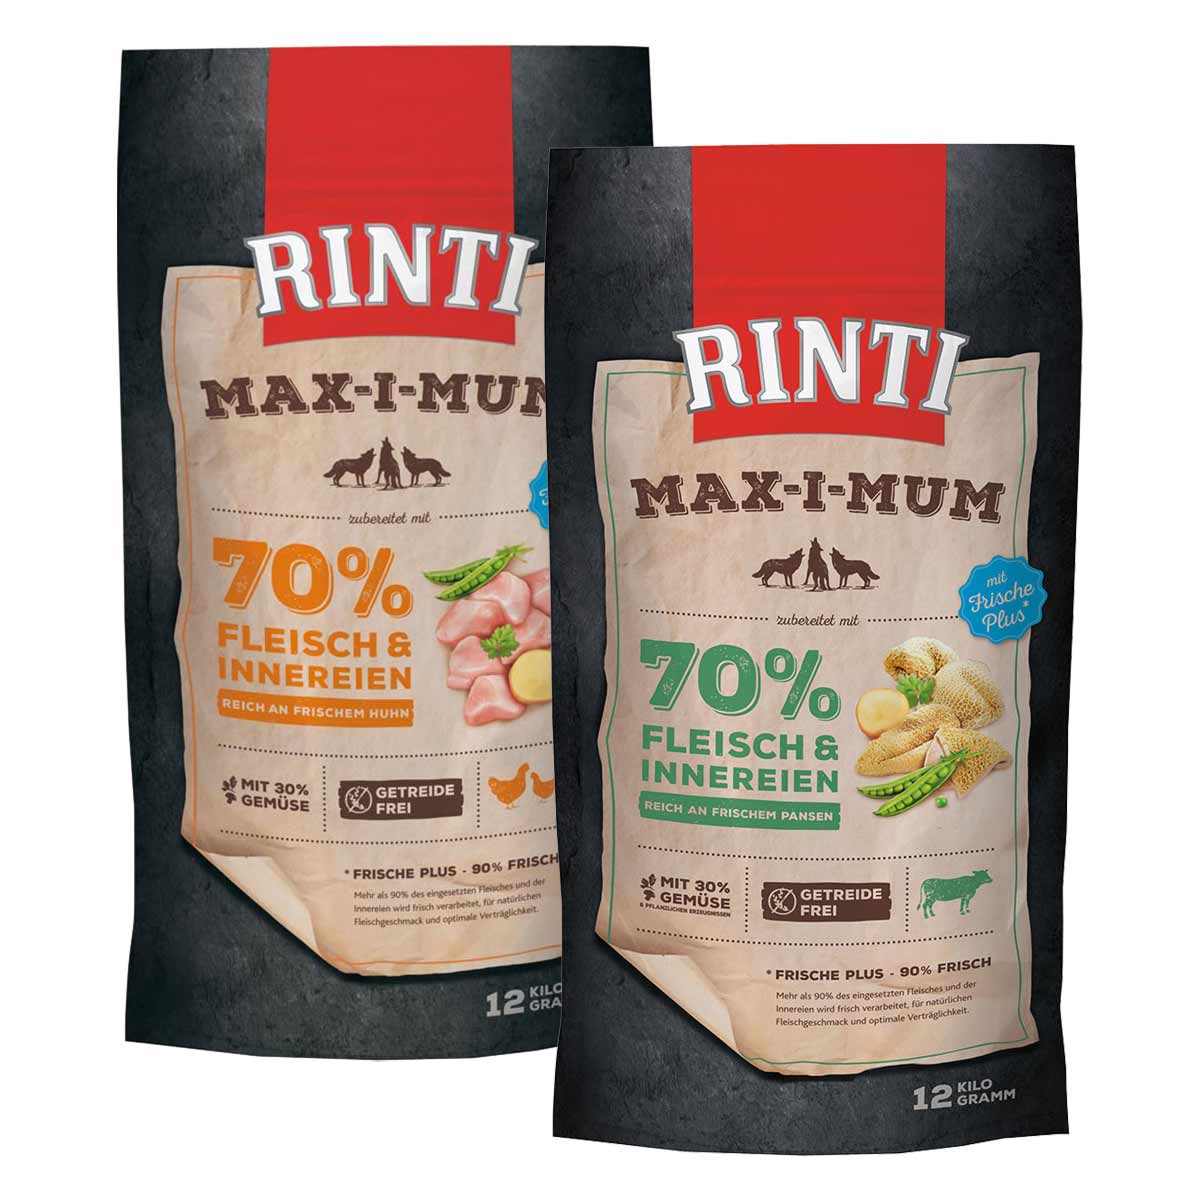 Rinti Max-i-Mum Huhn und Pansen Mixpaket 2x12kg